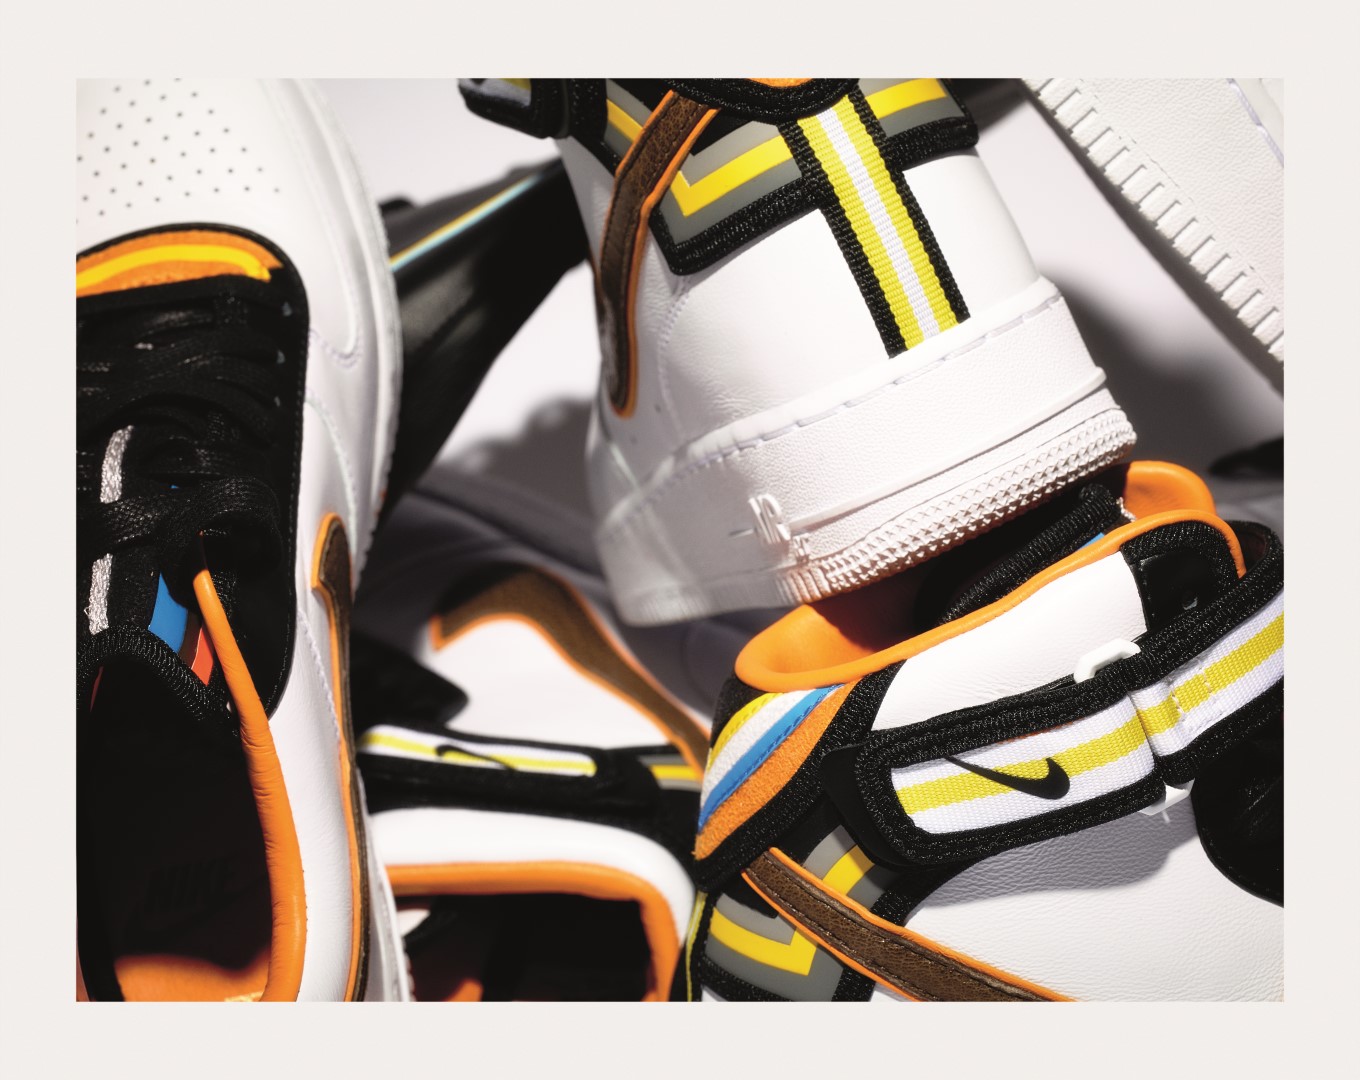 Nike Riccardo Tisci: la nuova collezione Nike + R.T. Air Force 1, le foto